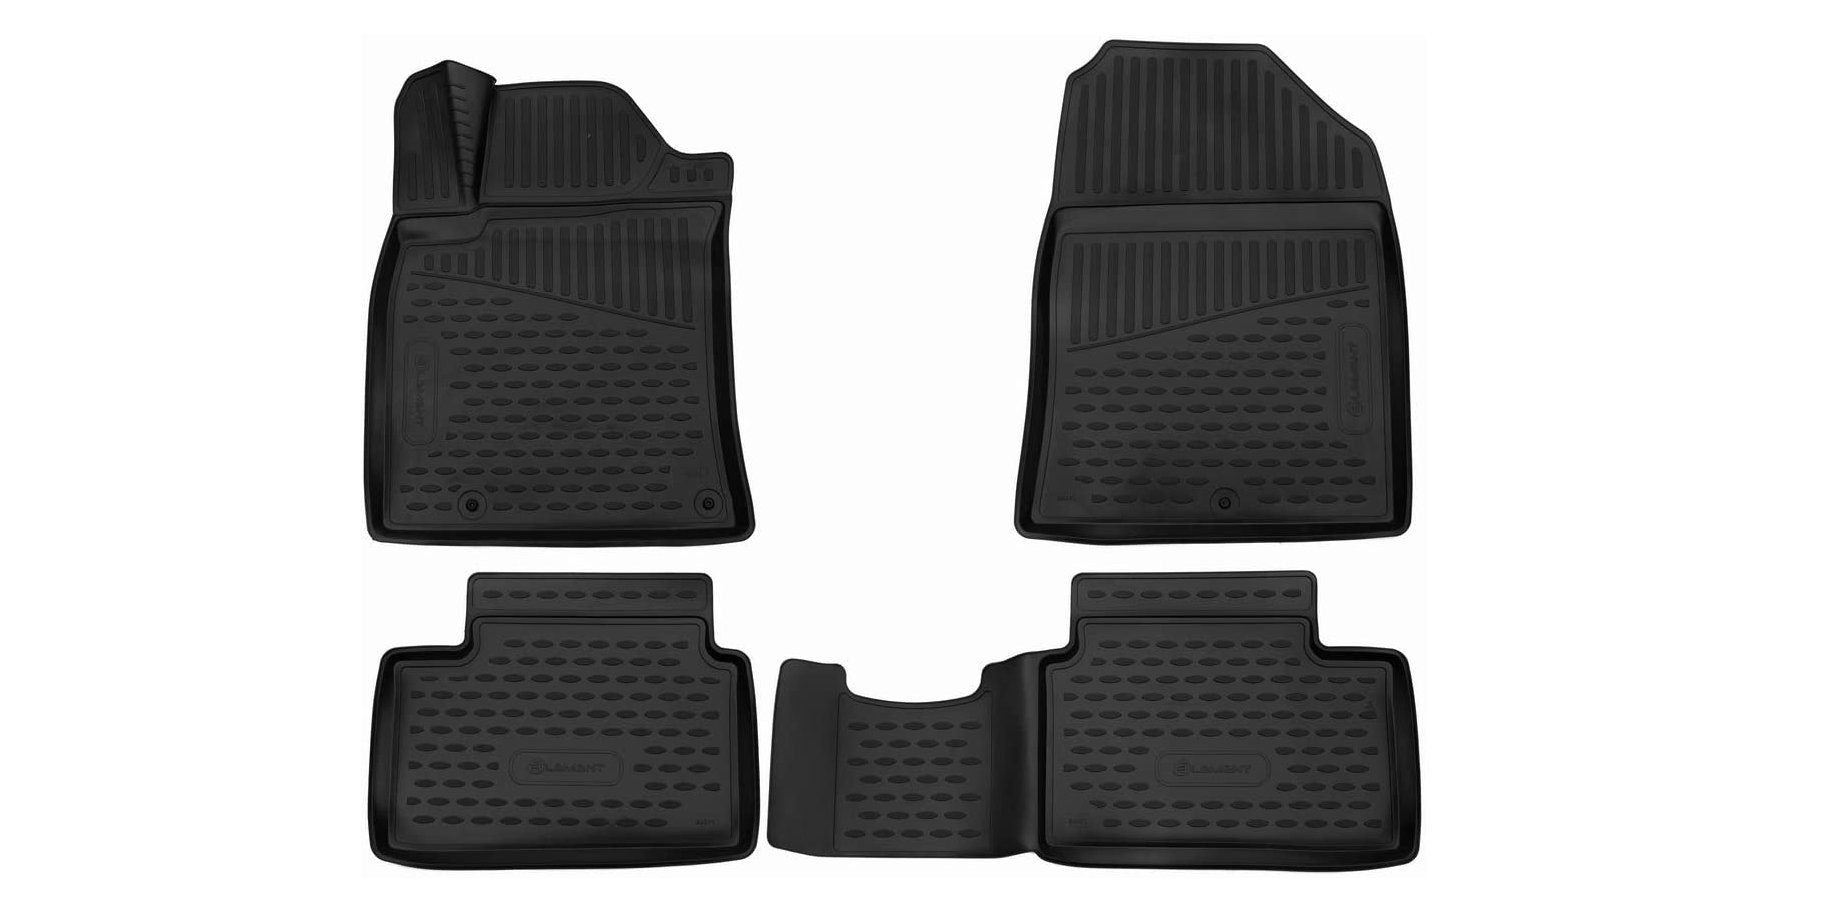 LEMENT Auto-Fußmatten Passgenaue 3D ELEMENT Fussmatten für HYUNDAI i30, 2019->, 4 tlg., für HYUNDAI i30 PKW, Passgenaue